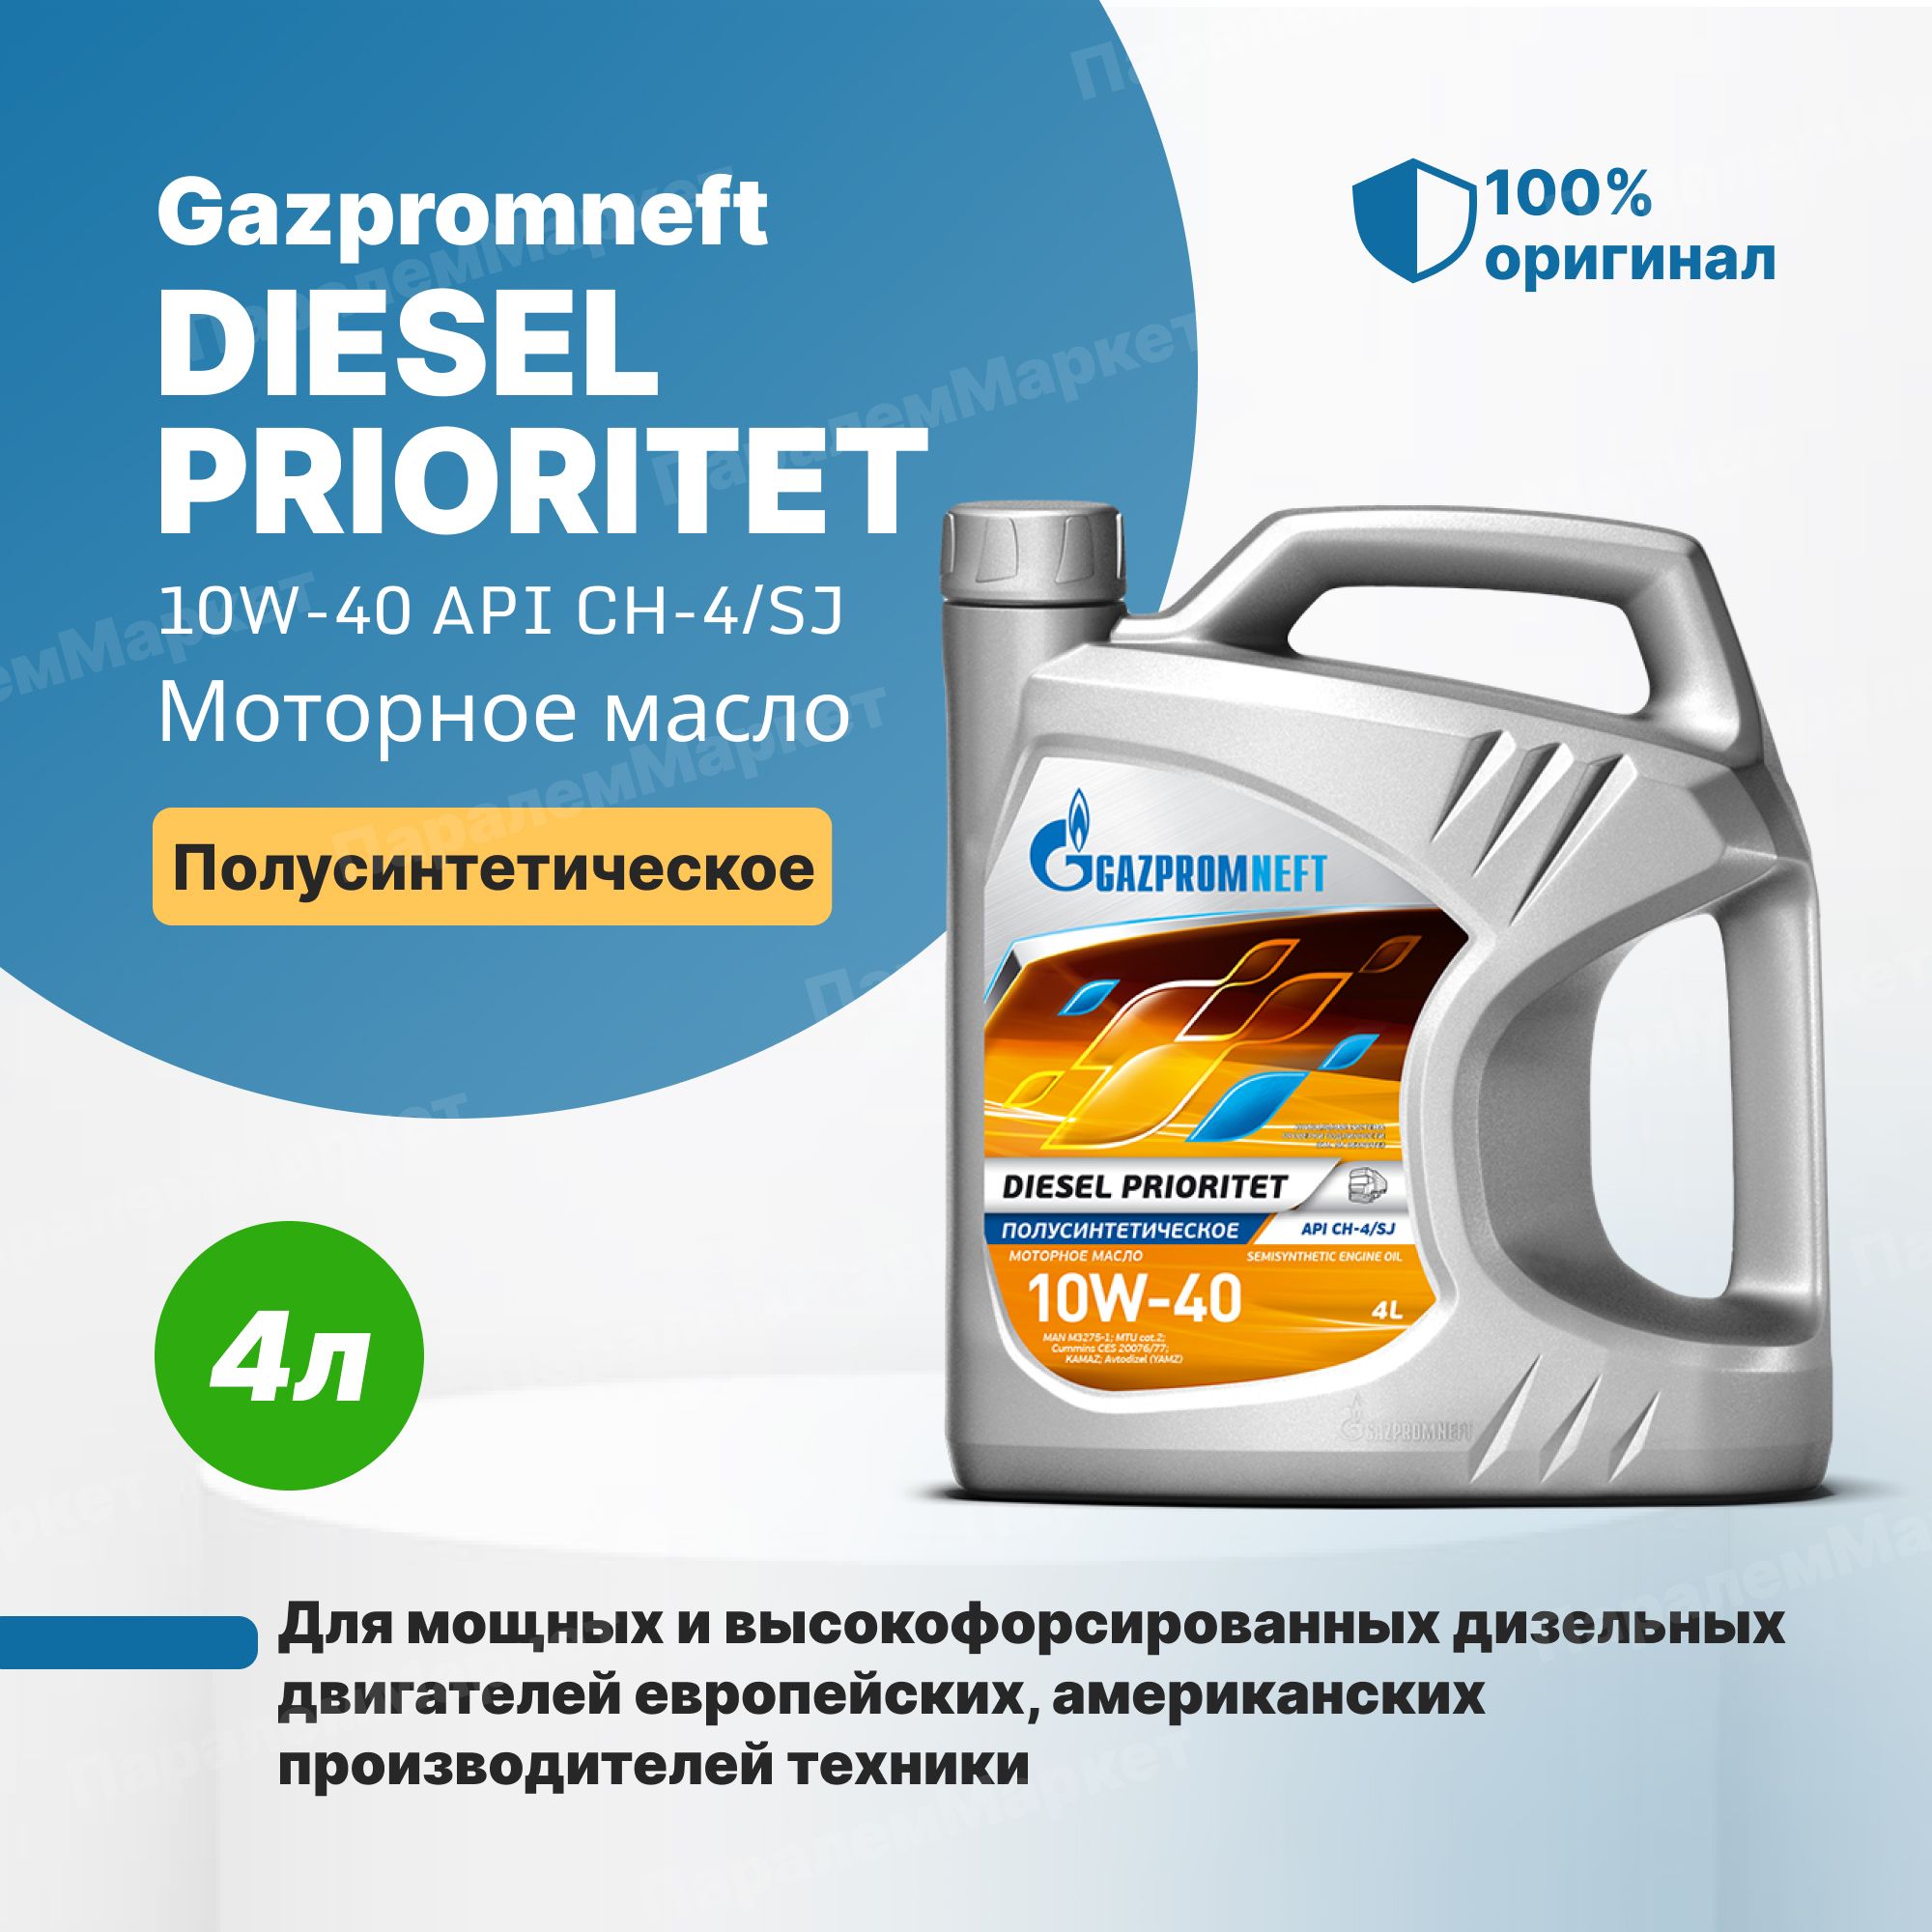 Моторное масло gazpromneft 5w 30